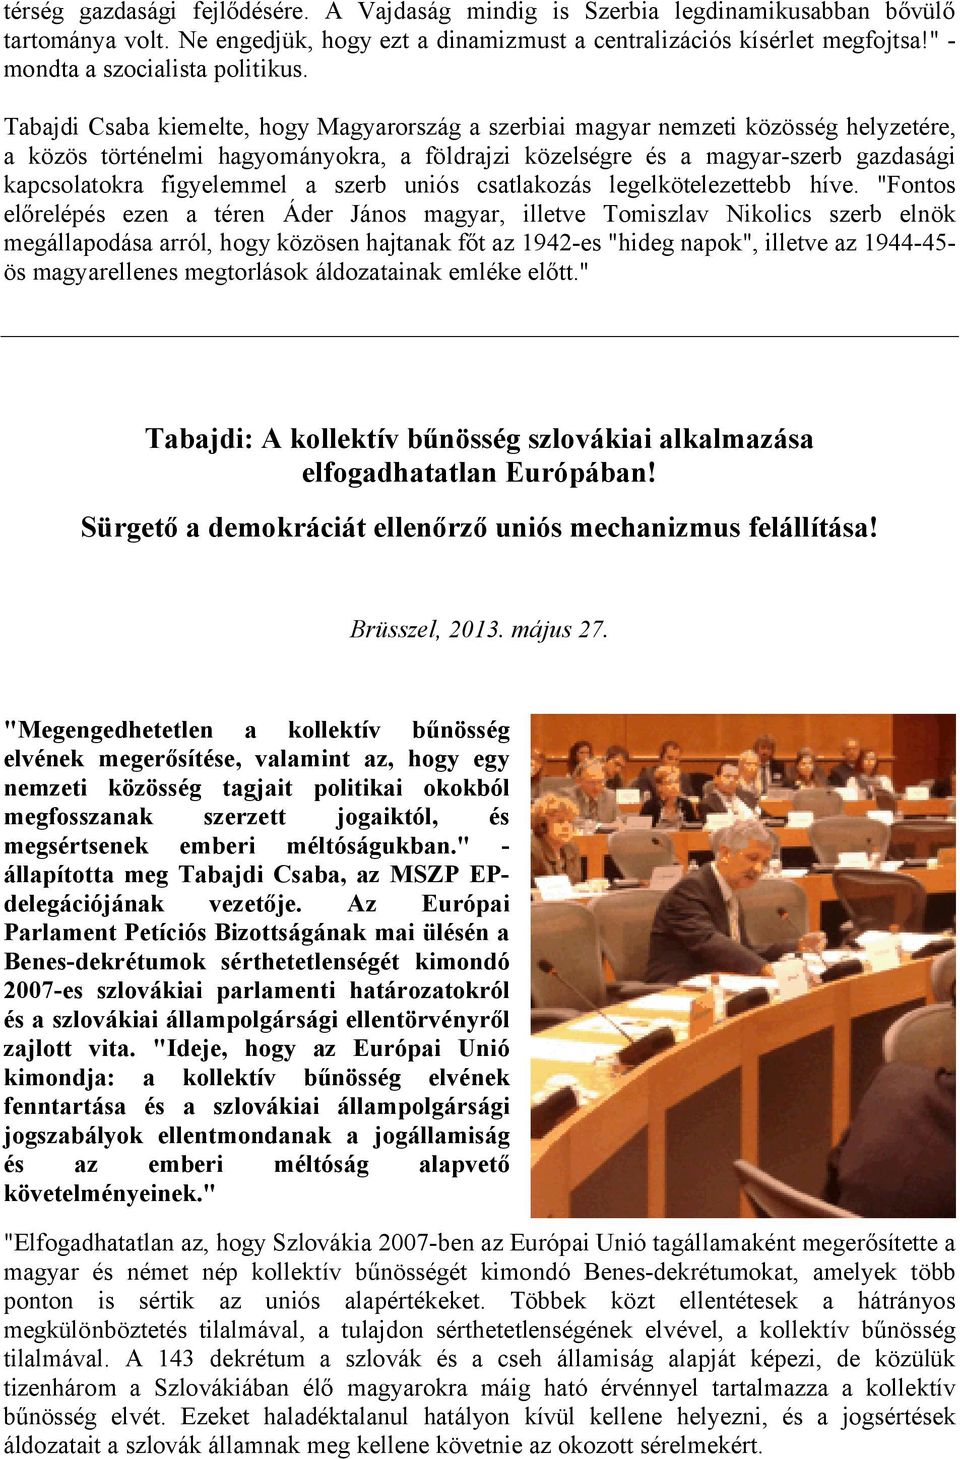 Tabajdi Csaba kiemelte, hogy Magyarország a szerbiai magyar nemzeti közösség helyzetére, a közös történelmi hagyományokra, a földrajzi közelségre és a magyar-szerb gazdasági kapcsolatokra figyelemmel